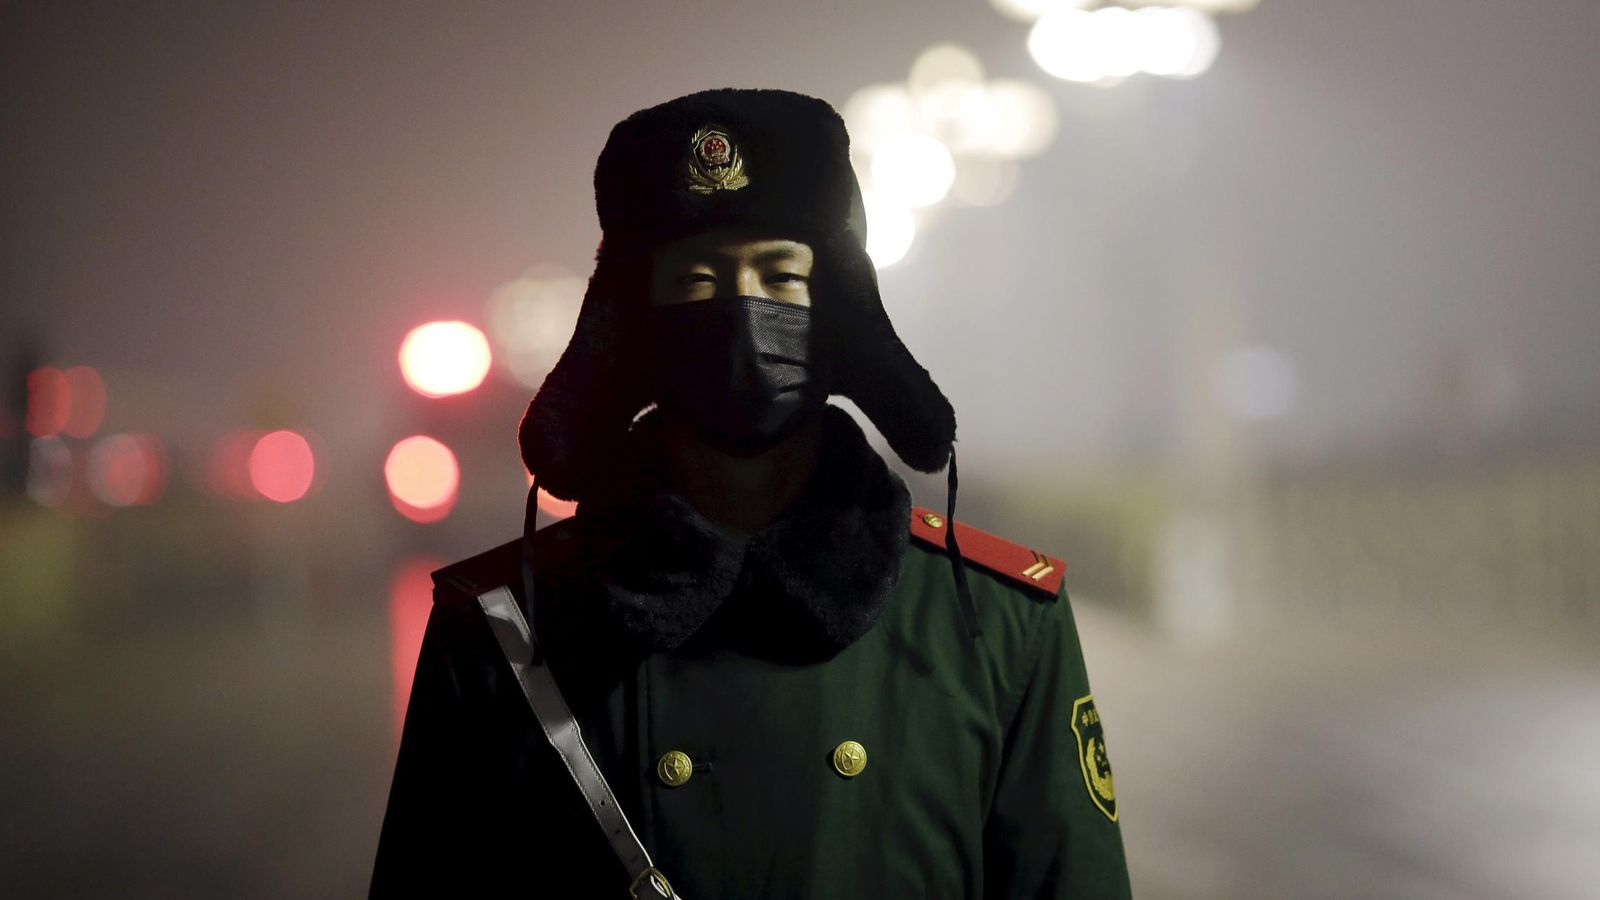 Foto: Un policía paramilitar de guardia en la Plaza de Tiananmen con una máscara en un día de alerta roja por contaminación, el 9 de diciembre de 2015 (Reuters).